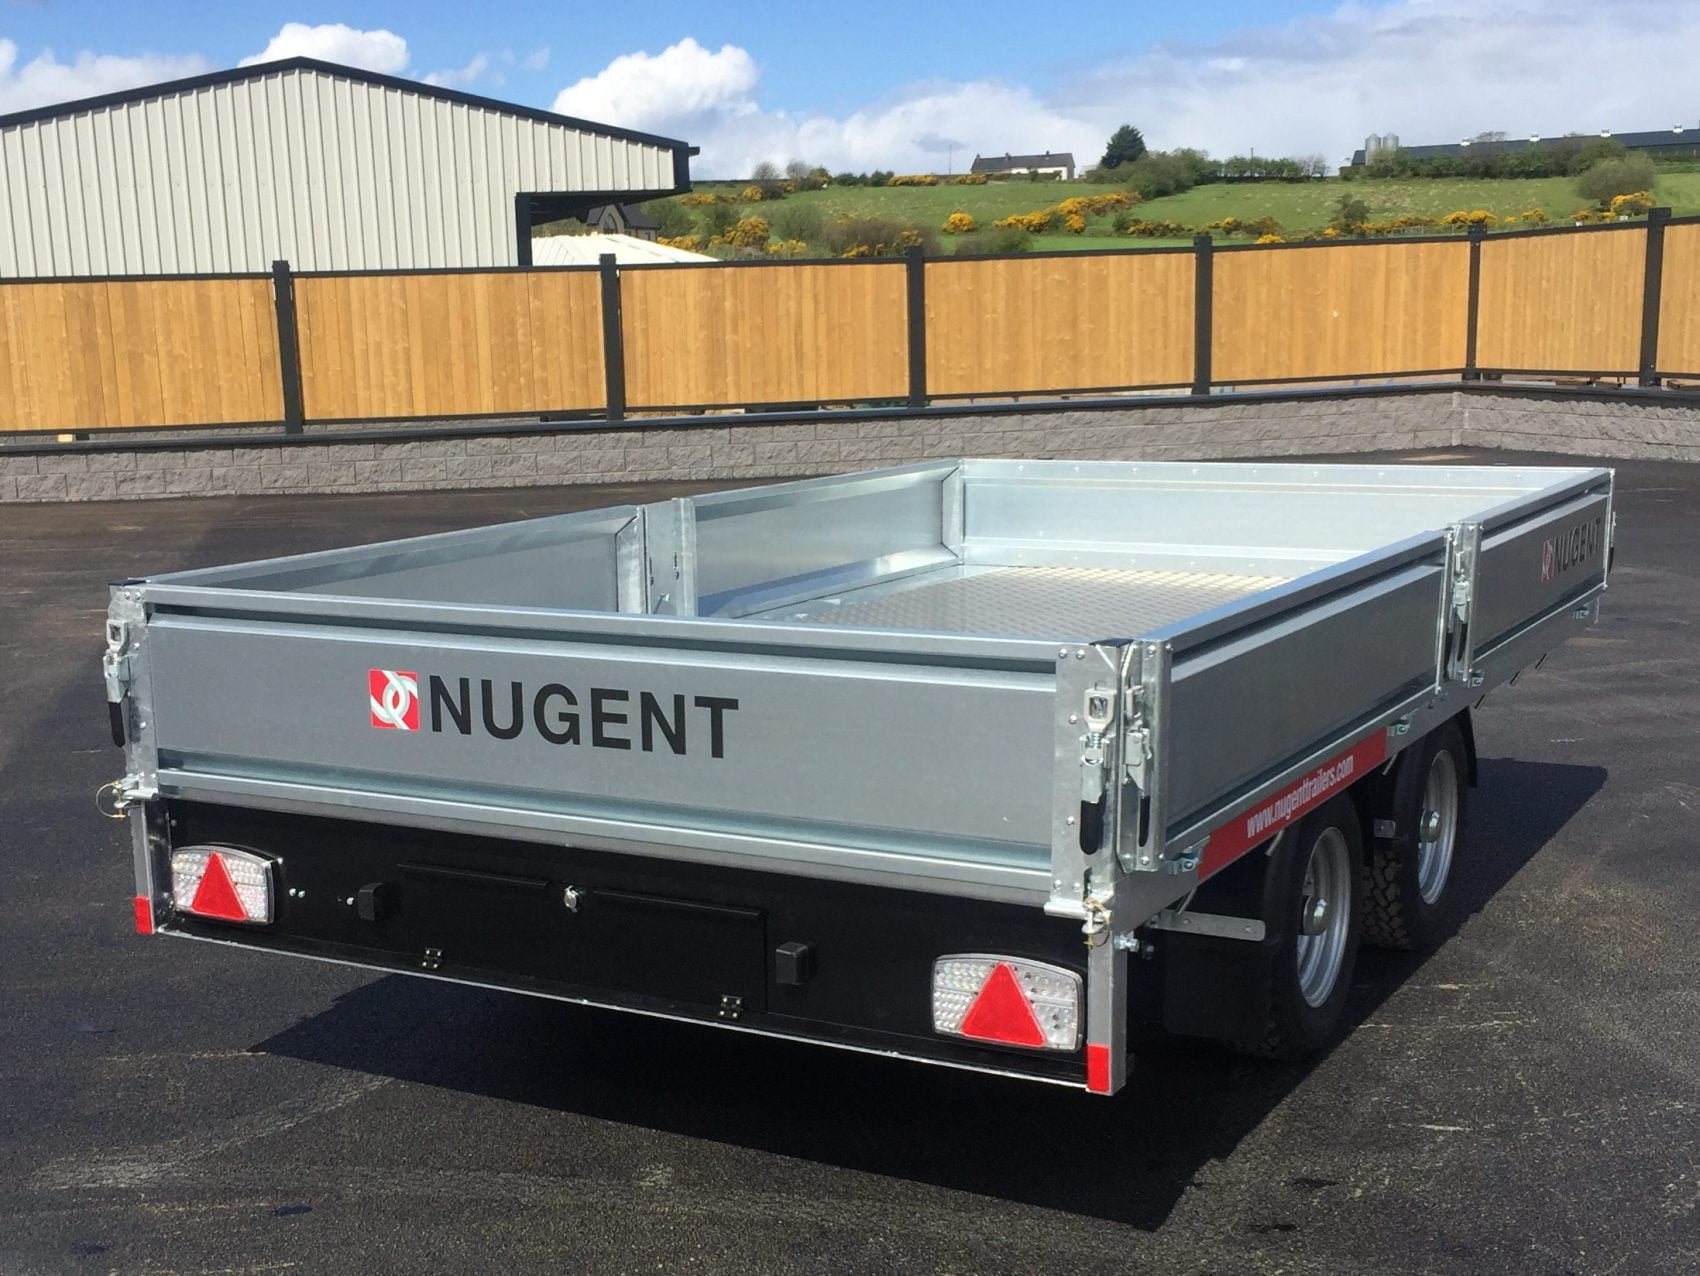 Nugent flatbed trailer for sale at Thurlow Nunn Standen